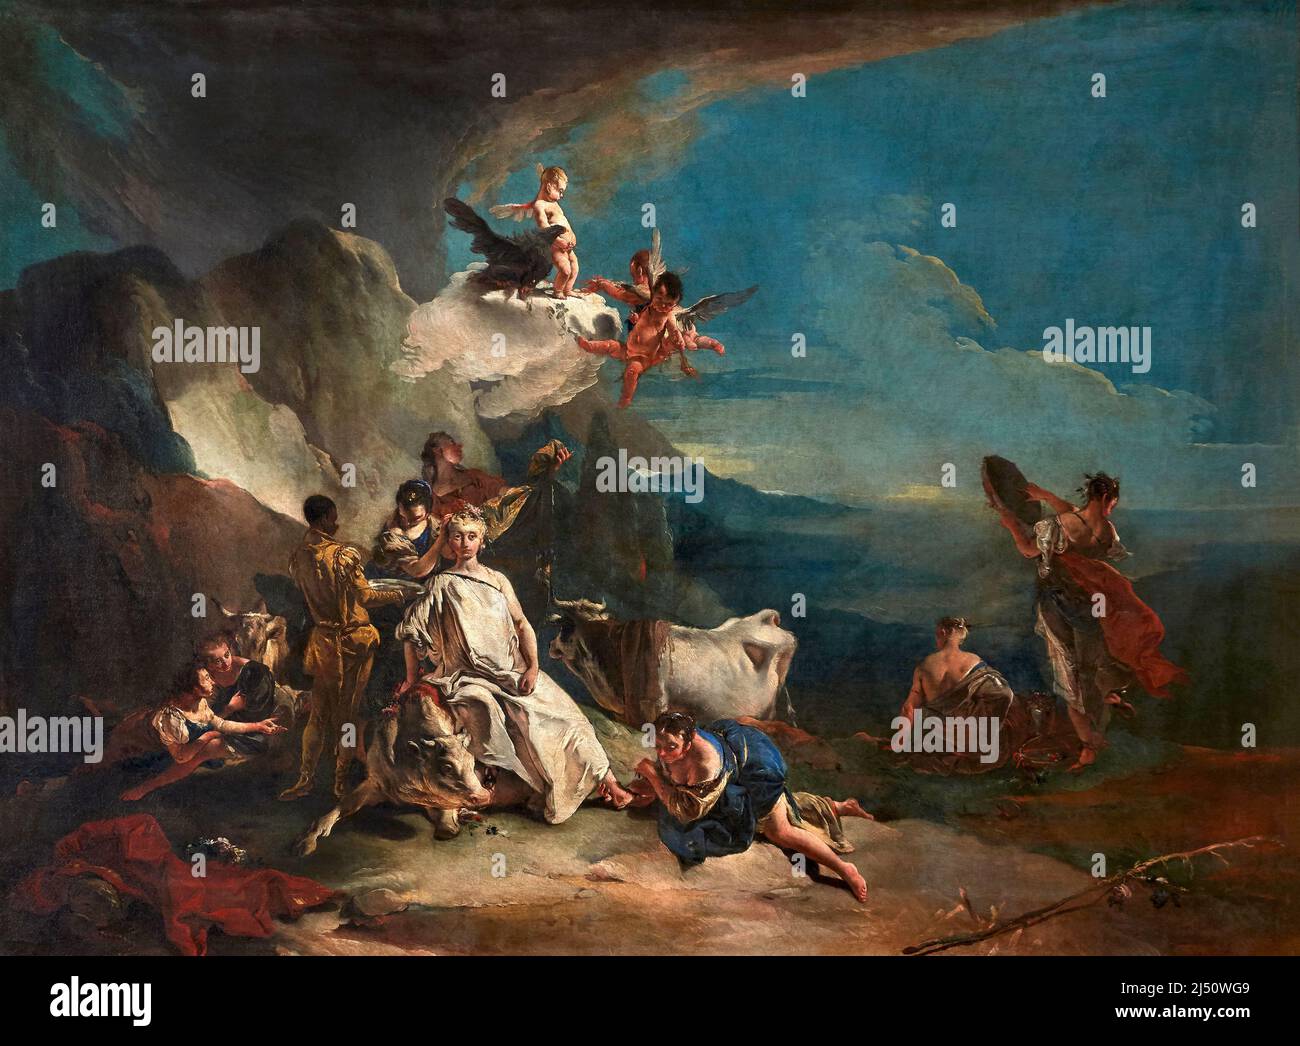 Rato di Europa - olio su tela - Giambattista Tiepolo - 1735 - Venezia, Gallerie dell’Accademia Foto Stock